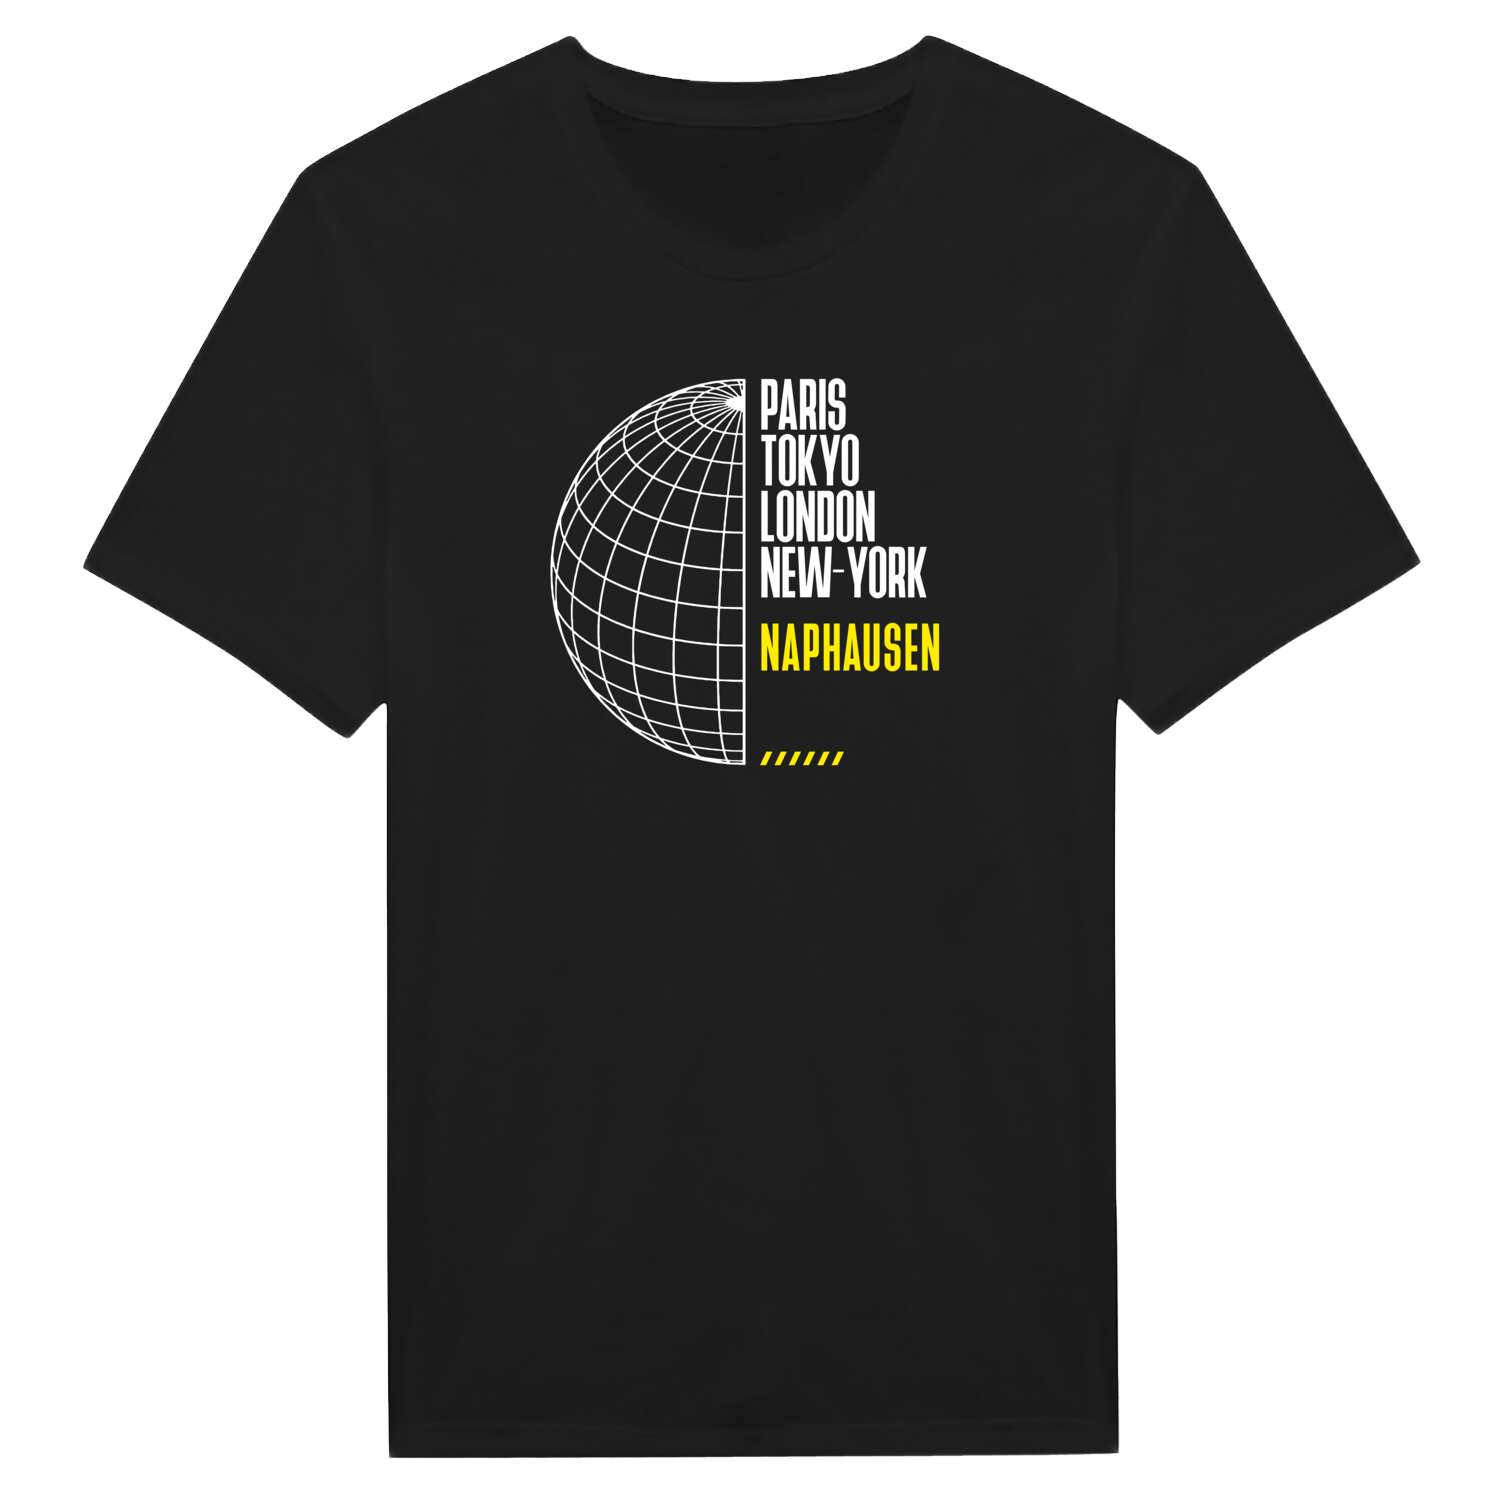 Naphausen T-Shirt »Paris Tokyo London«